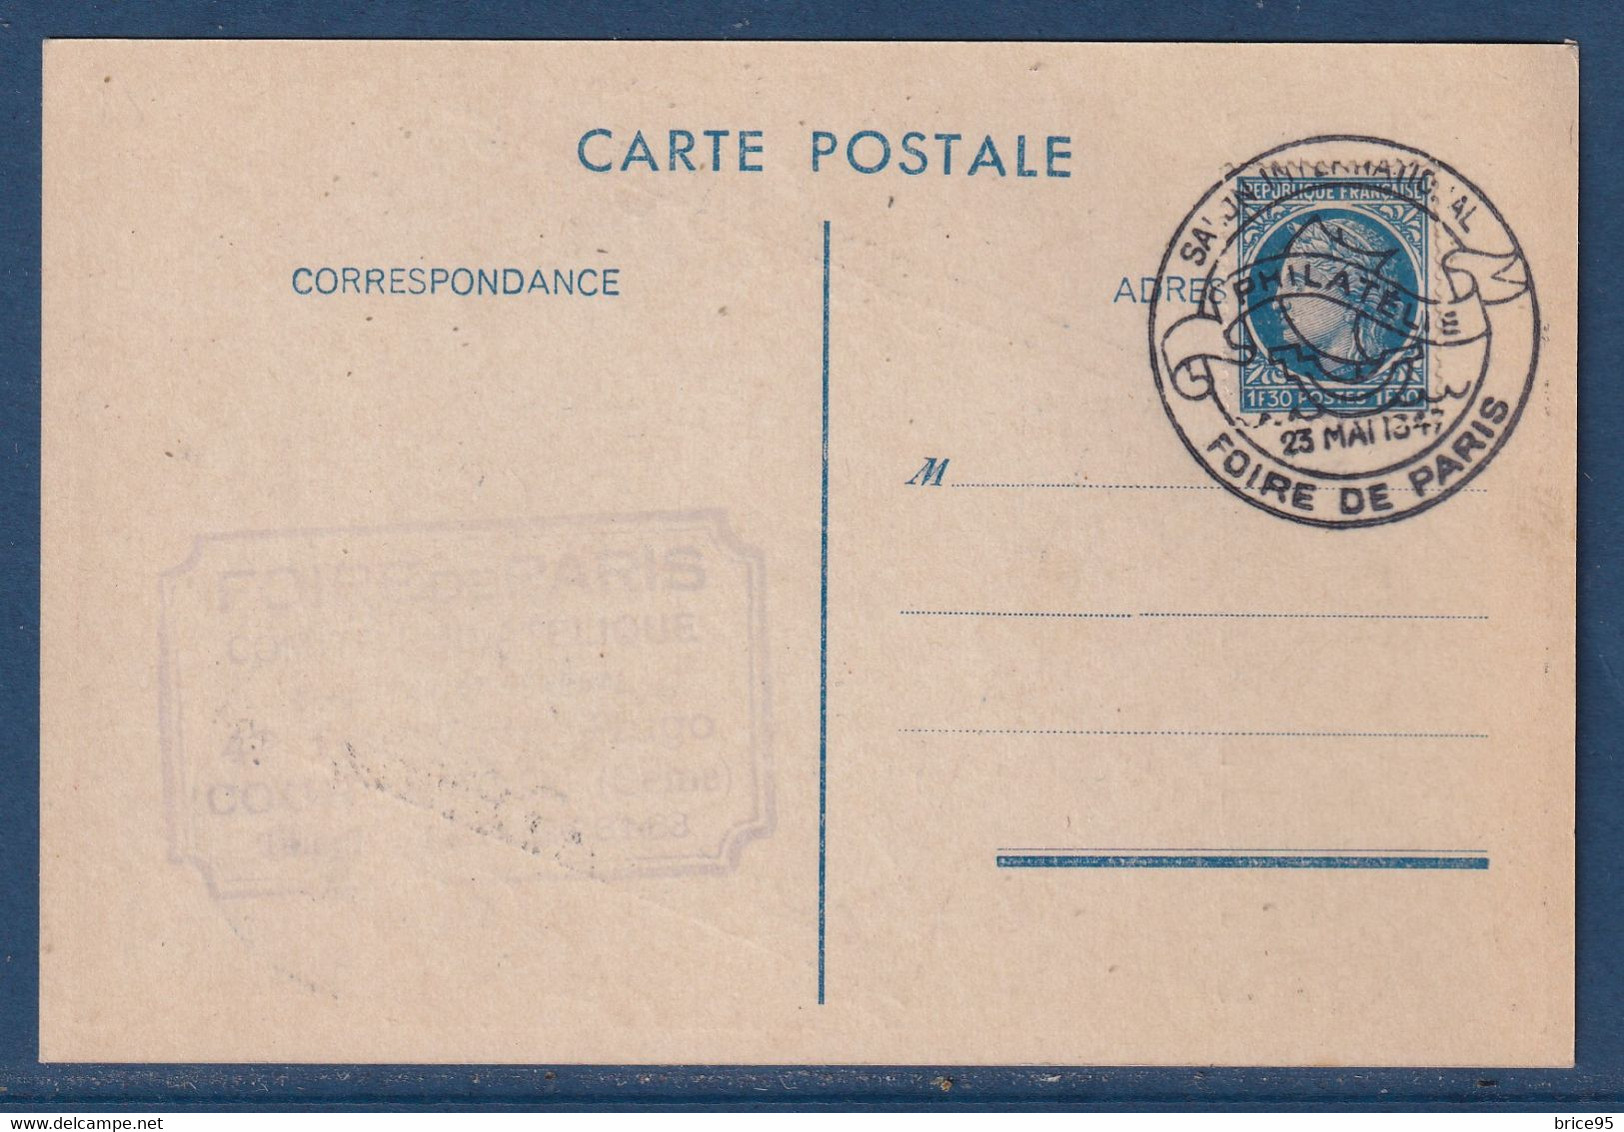 France - Carte Postale - CPA - Foire De Paris - 1947 - Bourses & Salons De Collections